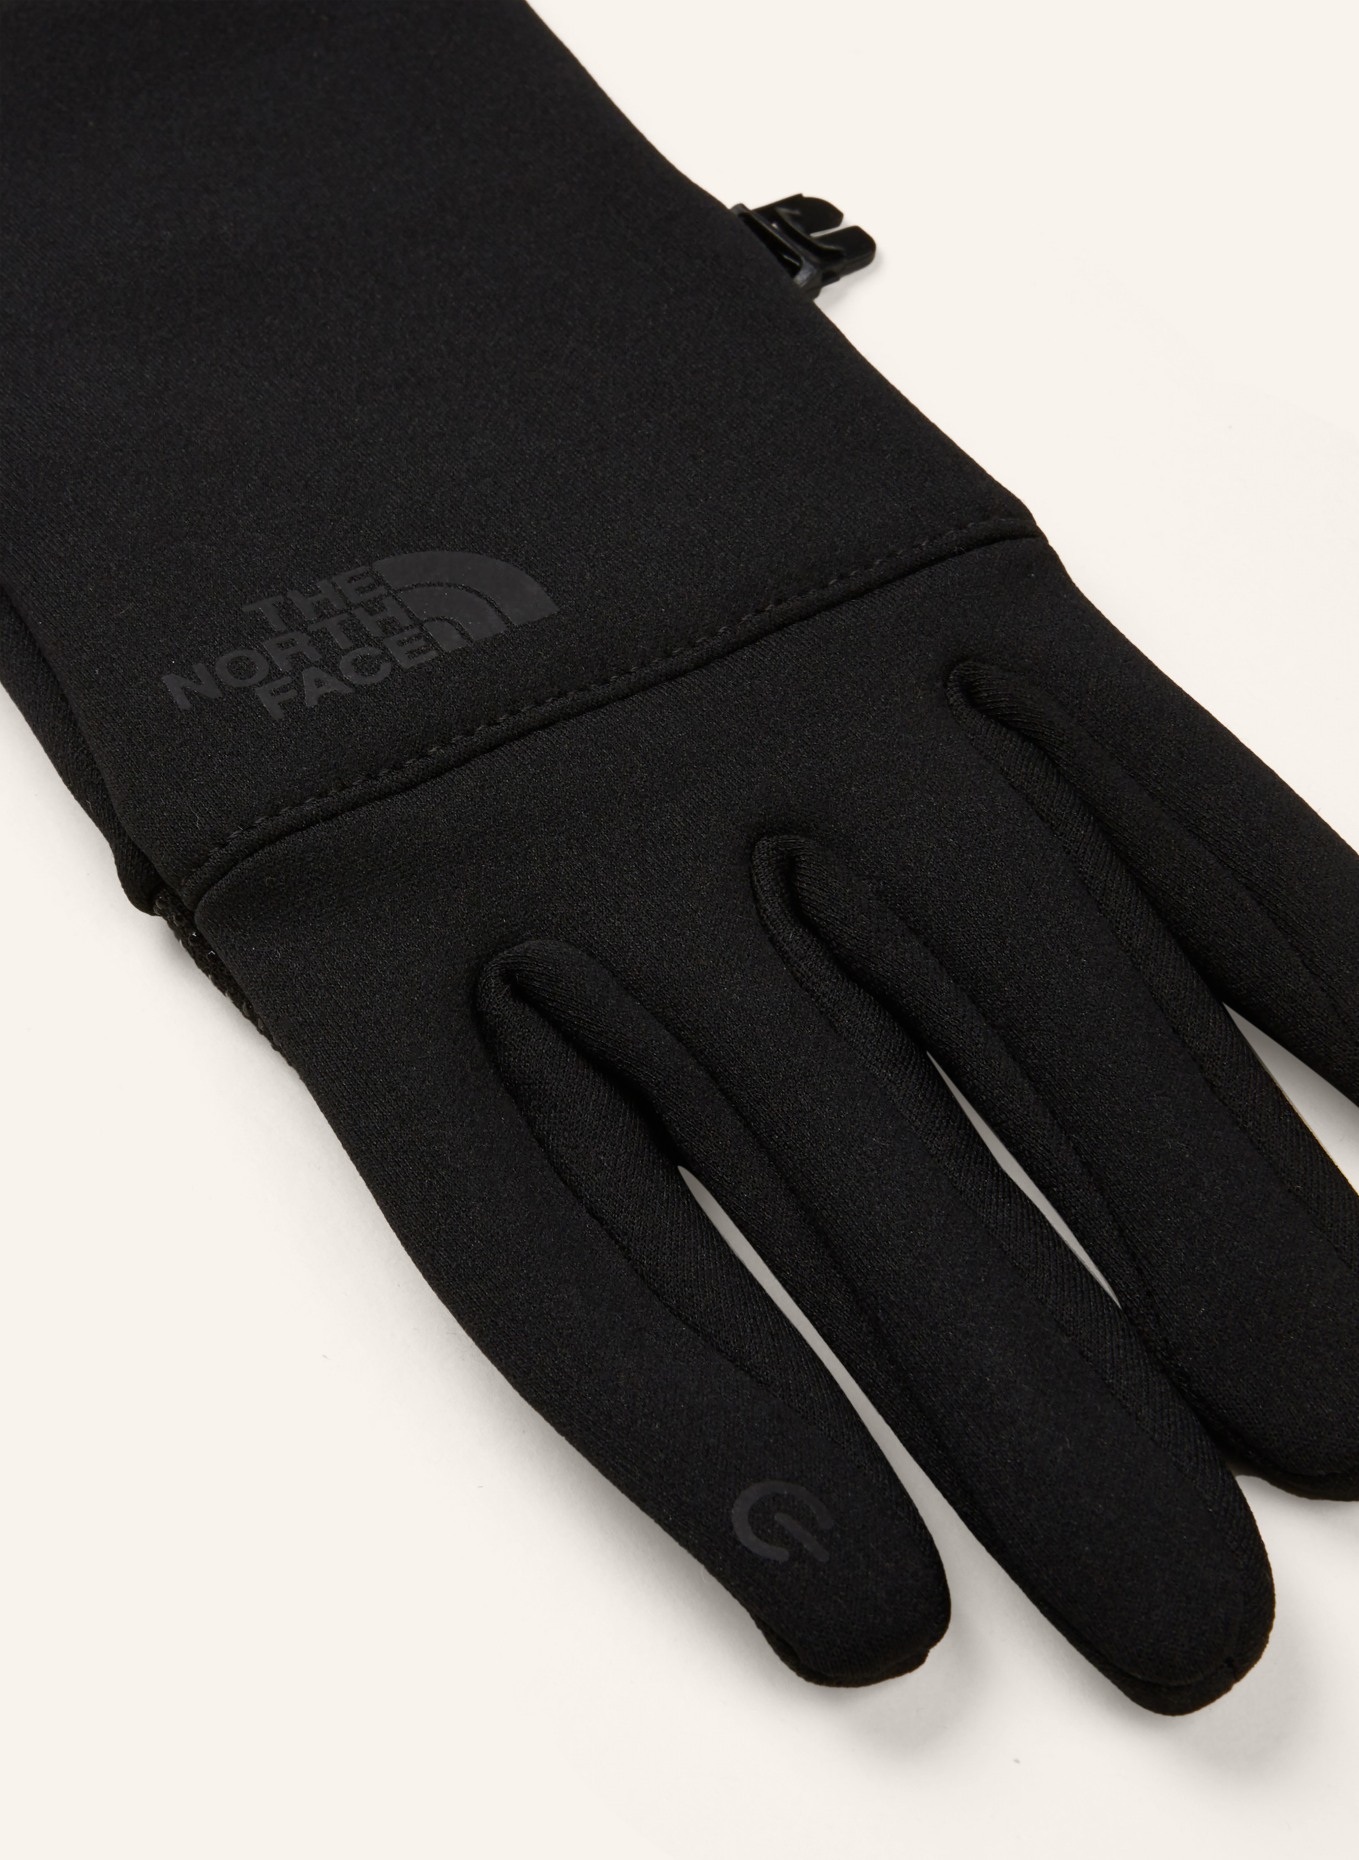 THE NORTH FACE Multisport-Handschuhe mit Touchscreen-Funktion in ETIP schwarz